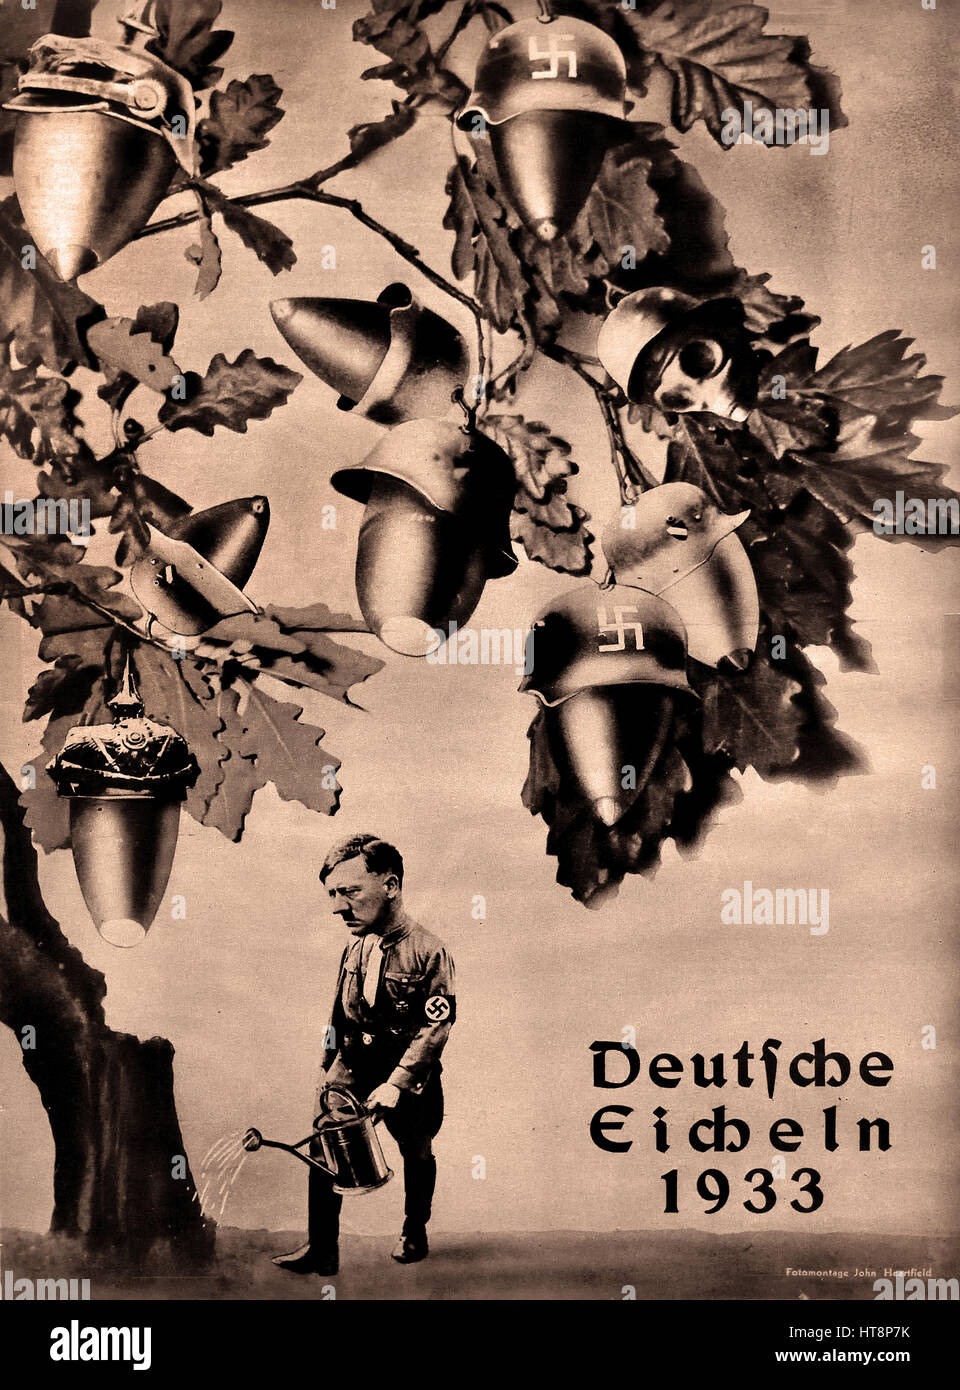 Deutche Eicheln - Deutsche Eicheln - Tedesco ghiande 1933Adolf Hitler - La Germania Nazista Berlino Seconda guerra mondiale Foto Stock